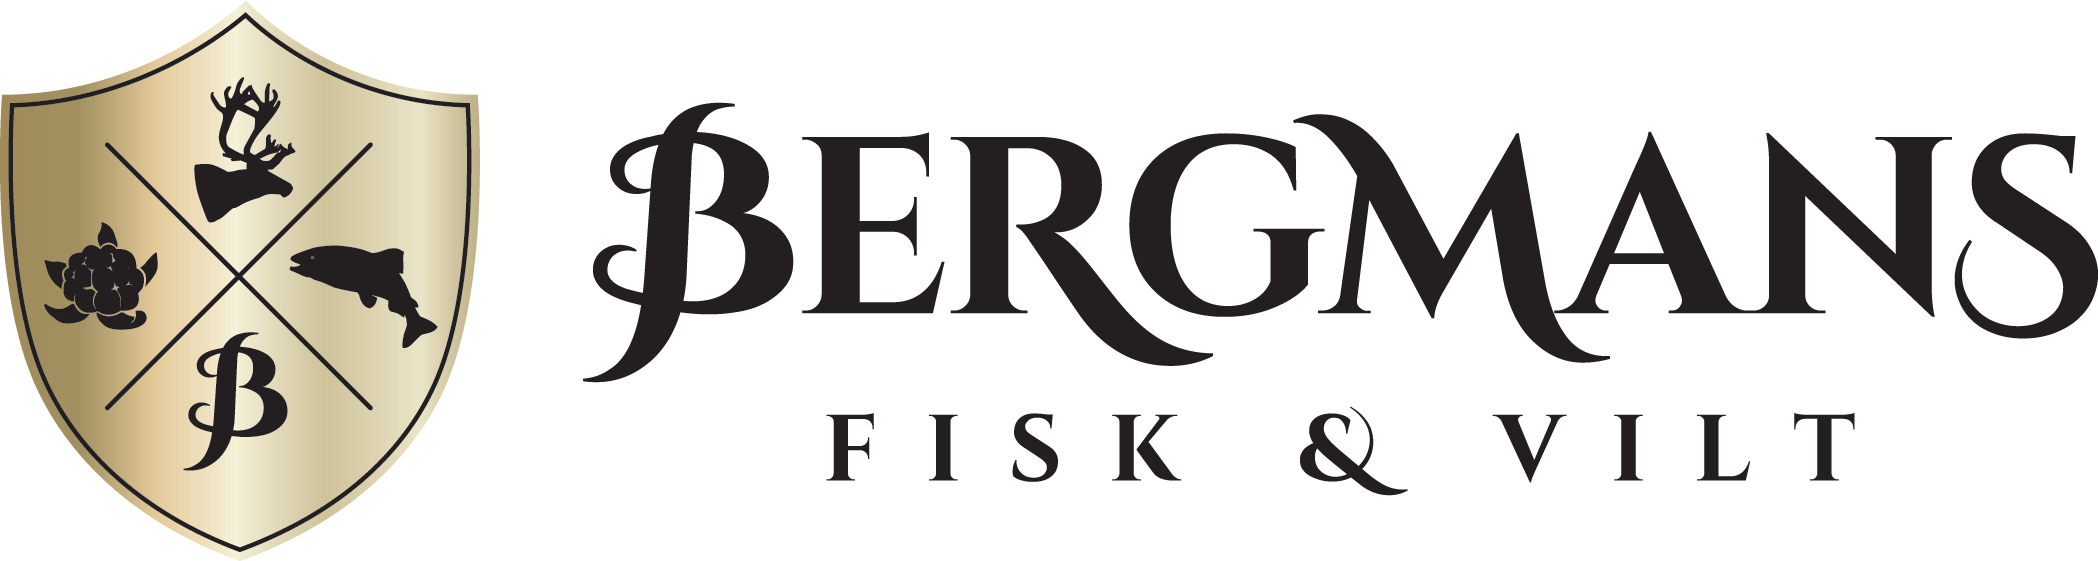 Bermans fisk & vilt - Logotyp